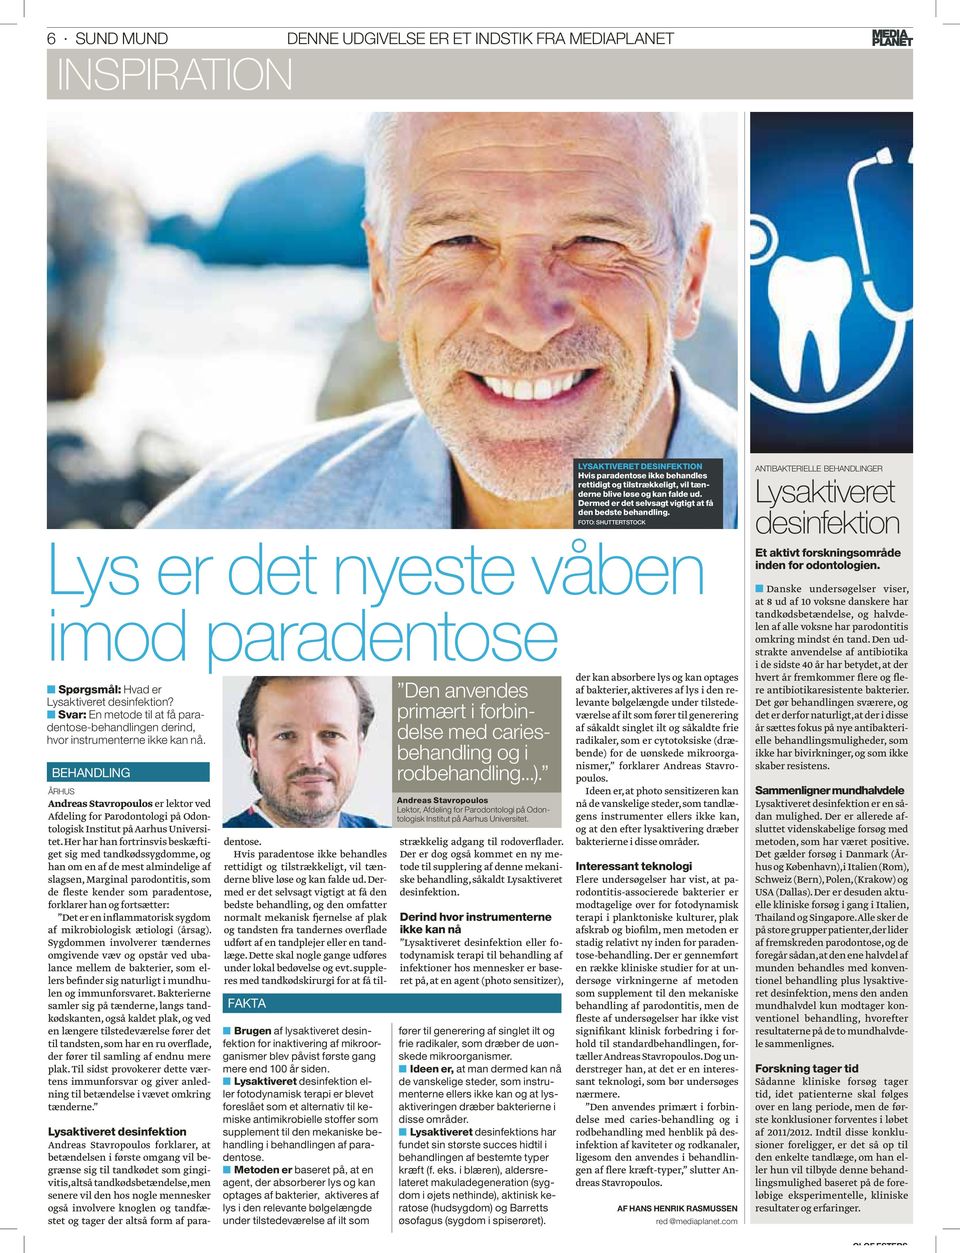 BEHANDLING ÅRHUS Andreas Stavropoulos er lektor ved Afdeling for Parodontologi på Odontologisk Institut på Aarhus Universitet.